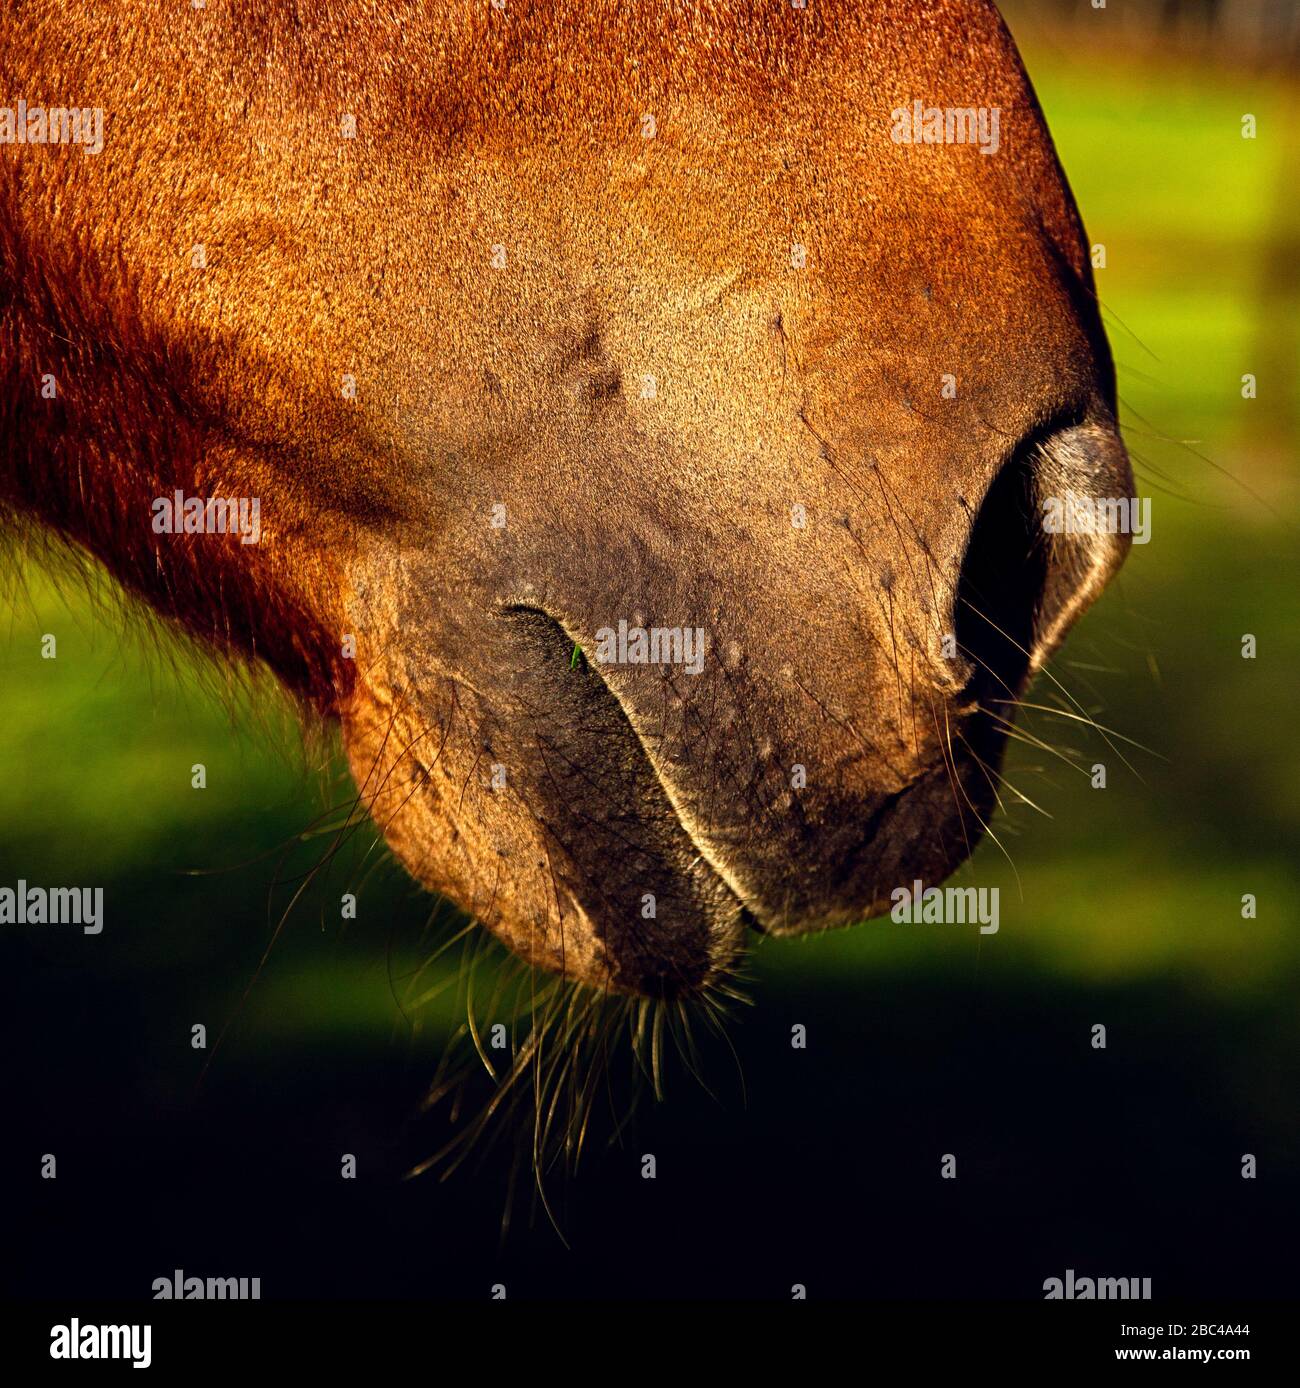 Primer plano del hocico de un caballo que muestra la fosa nasal, la boca, la barbilla y los susurros Foto de stock